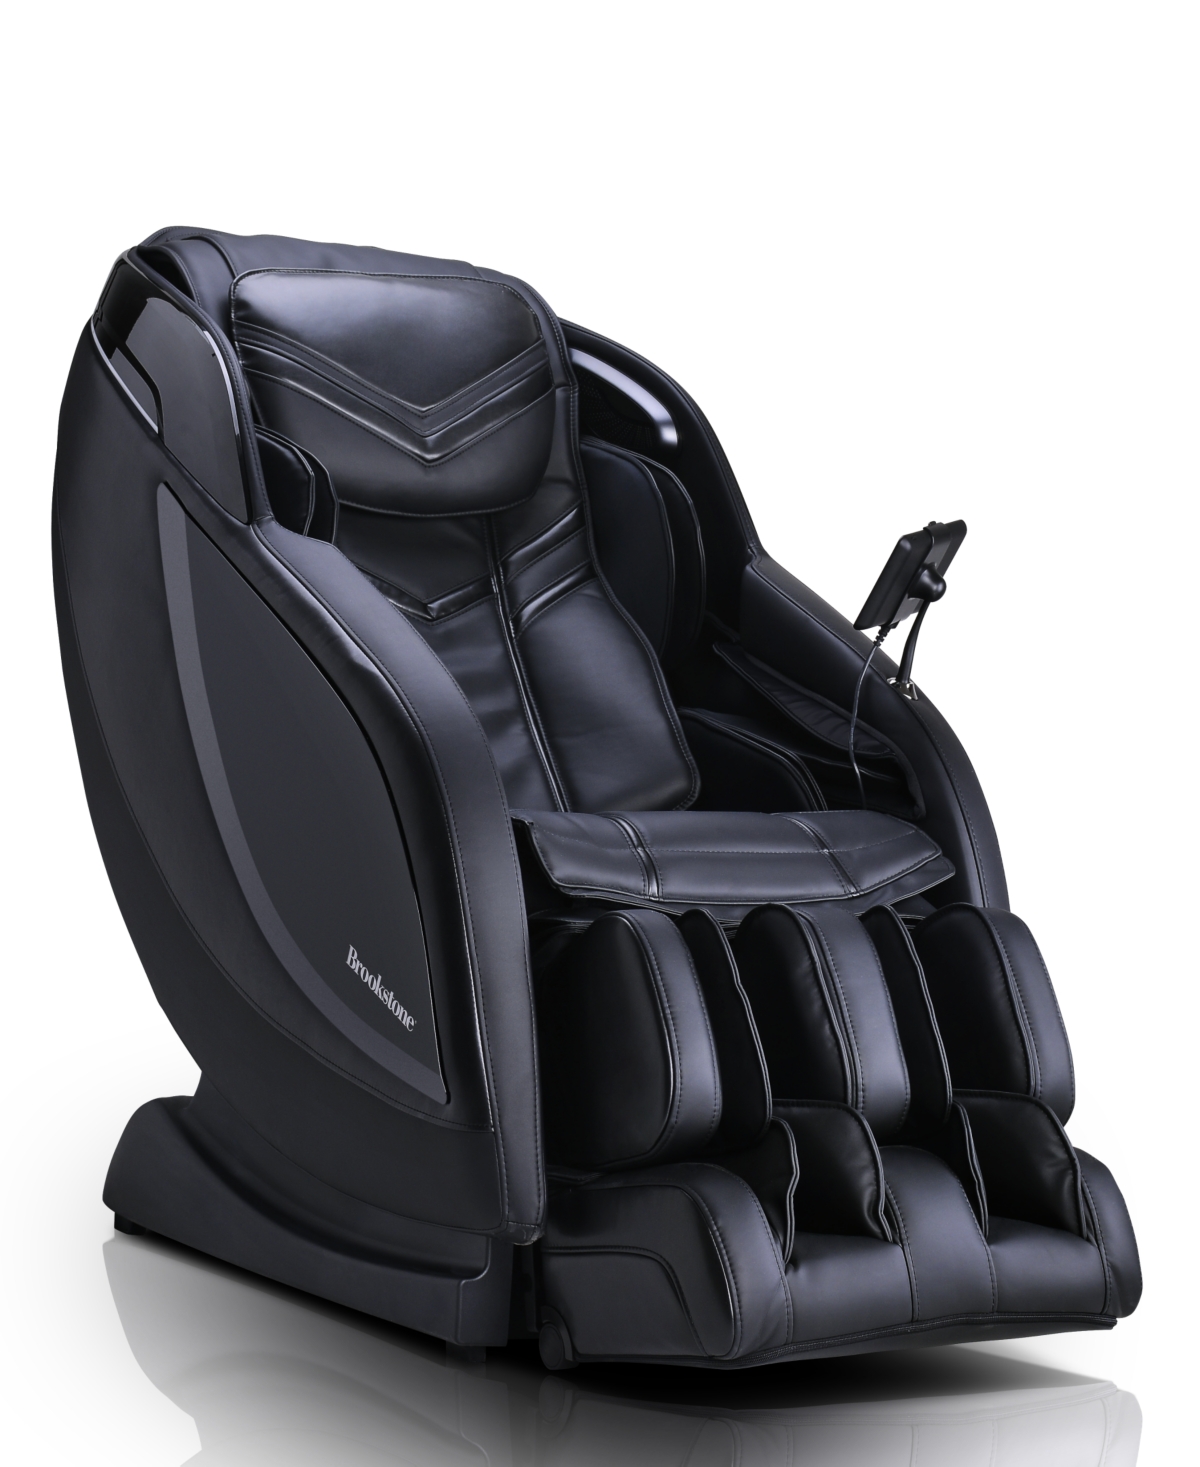 Bk-650 Massage Chair